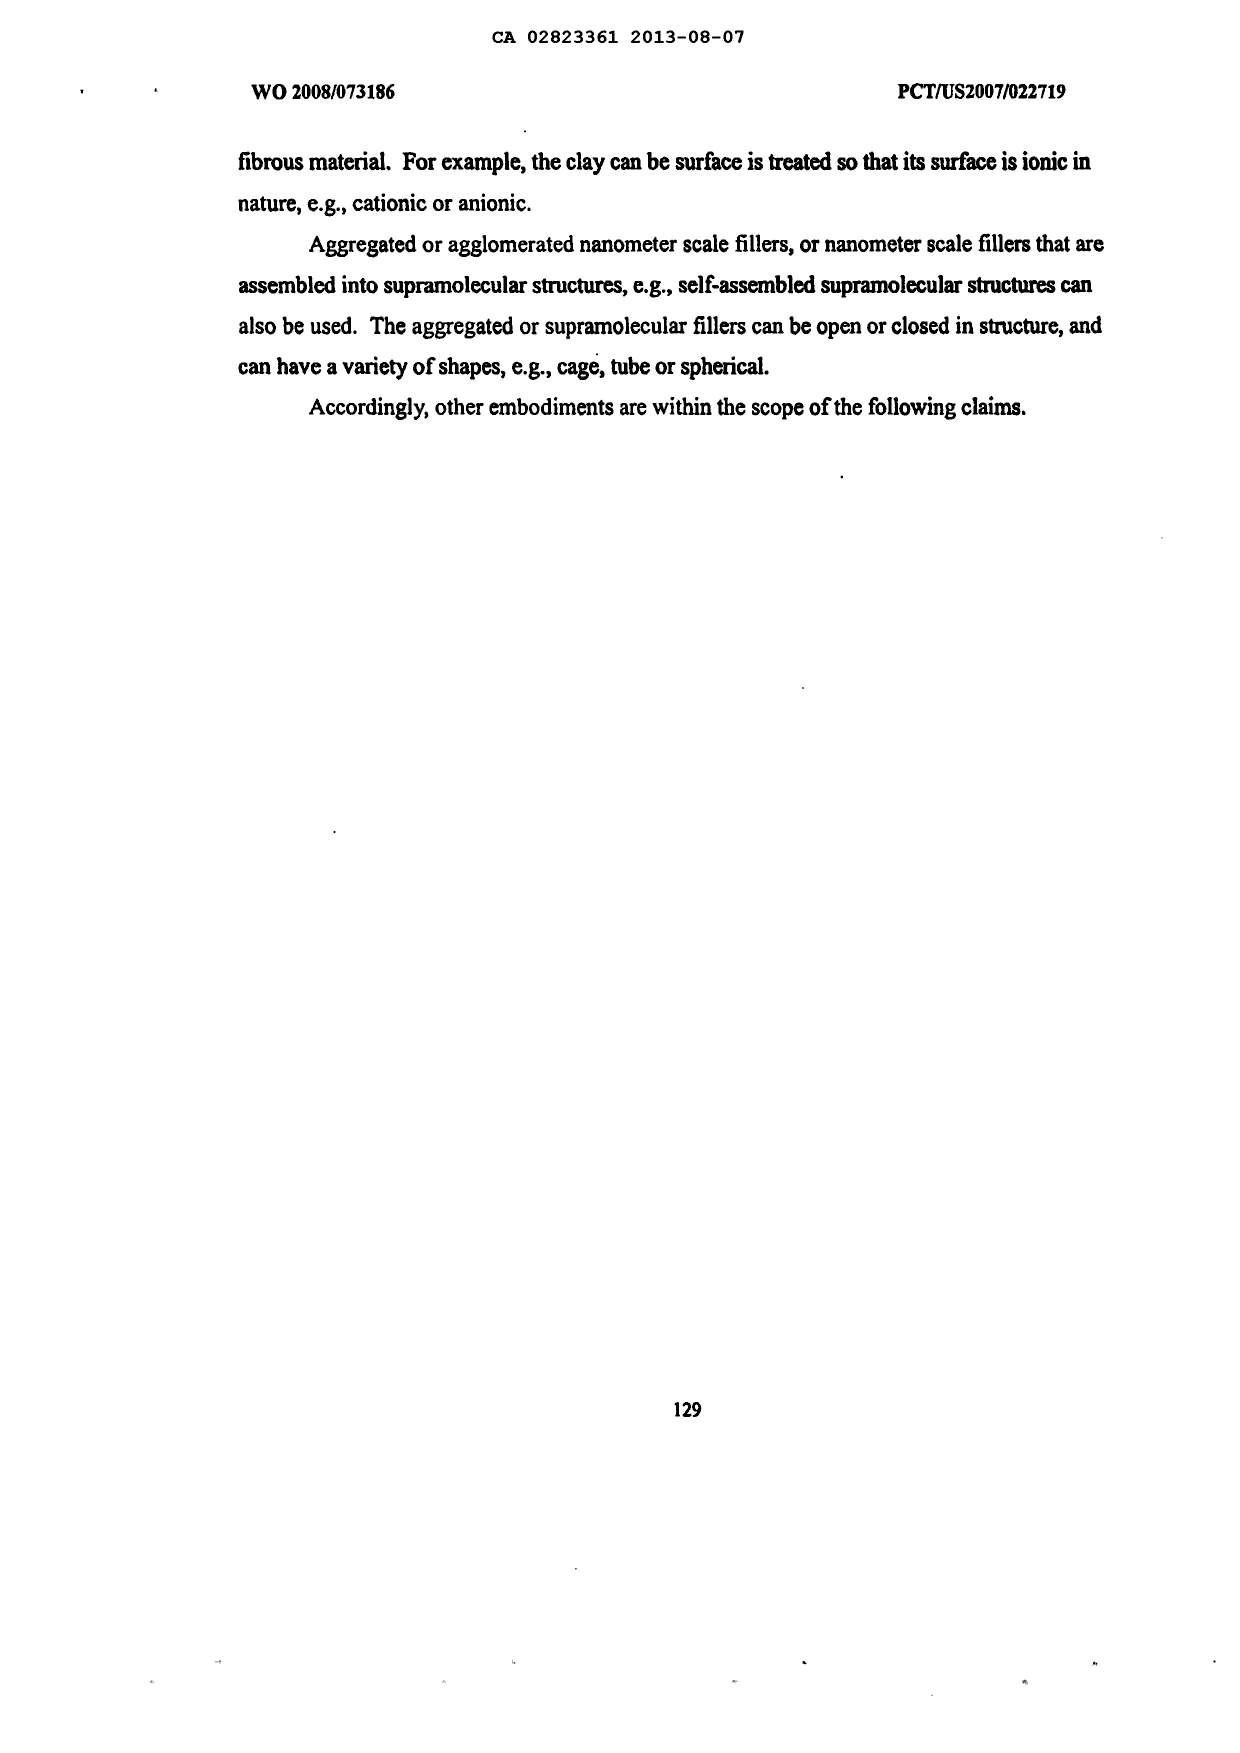 Canadian Patent Document 2823361. Description 20131225. Image 130 of 130